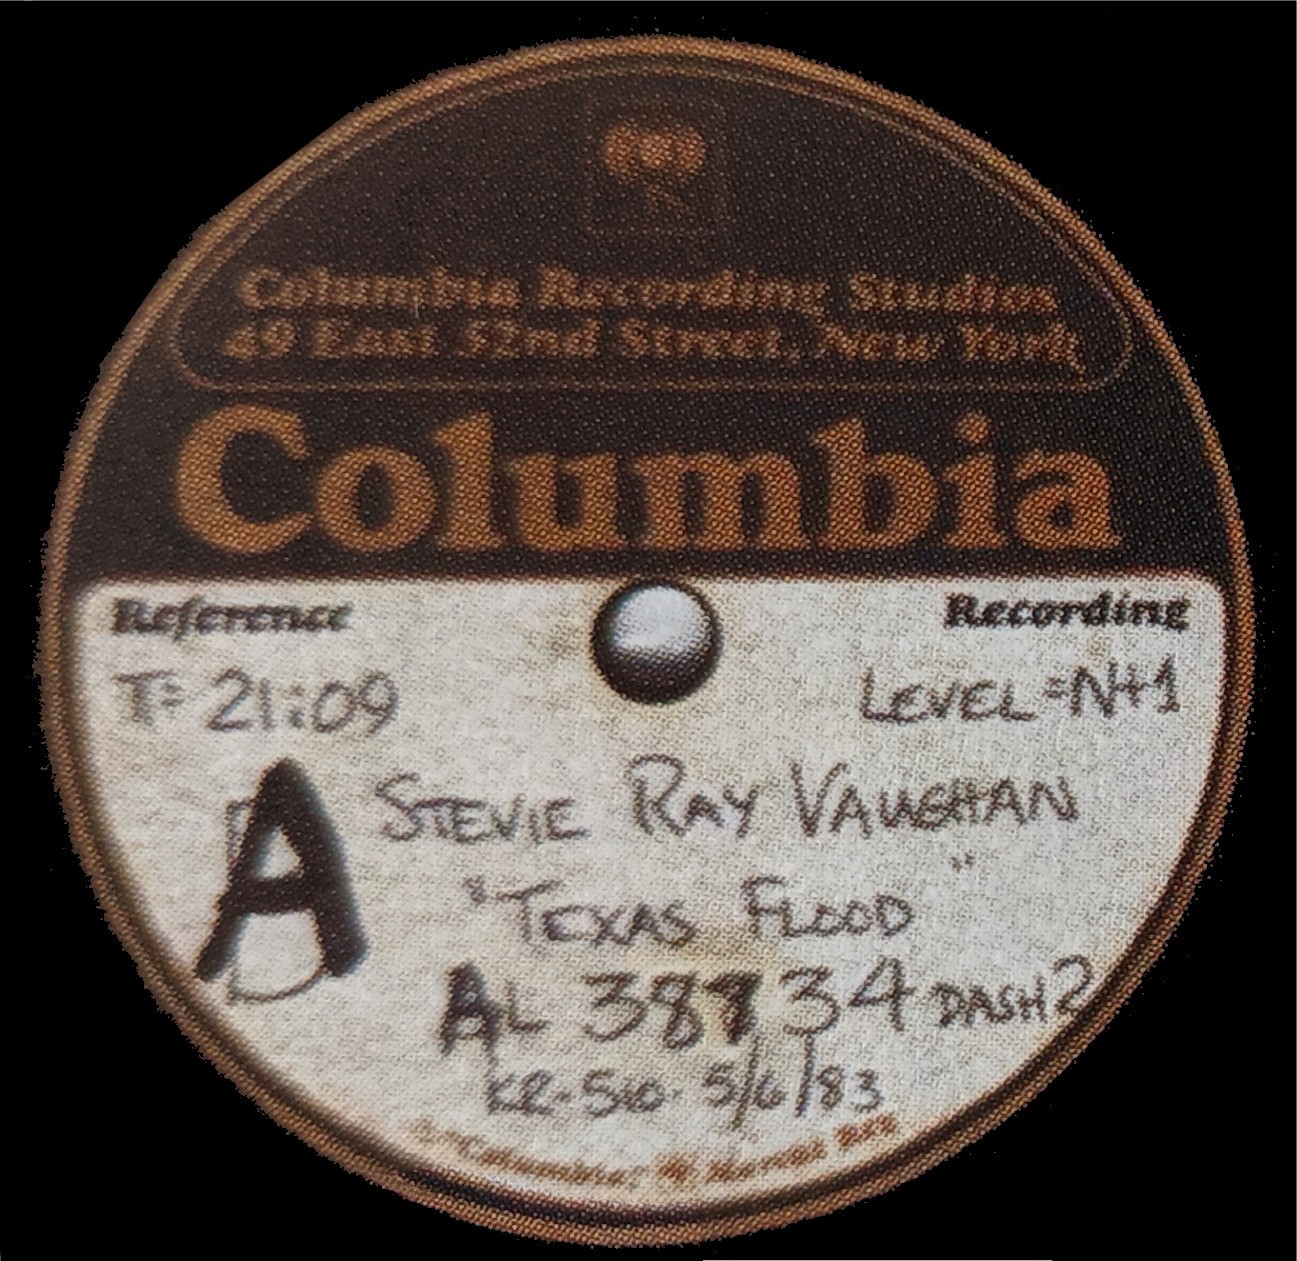 Stevie Ray Vaughan - Texas Flood Acetate